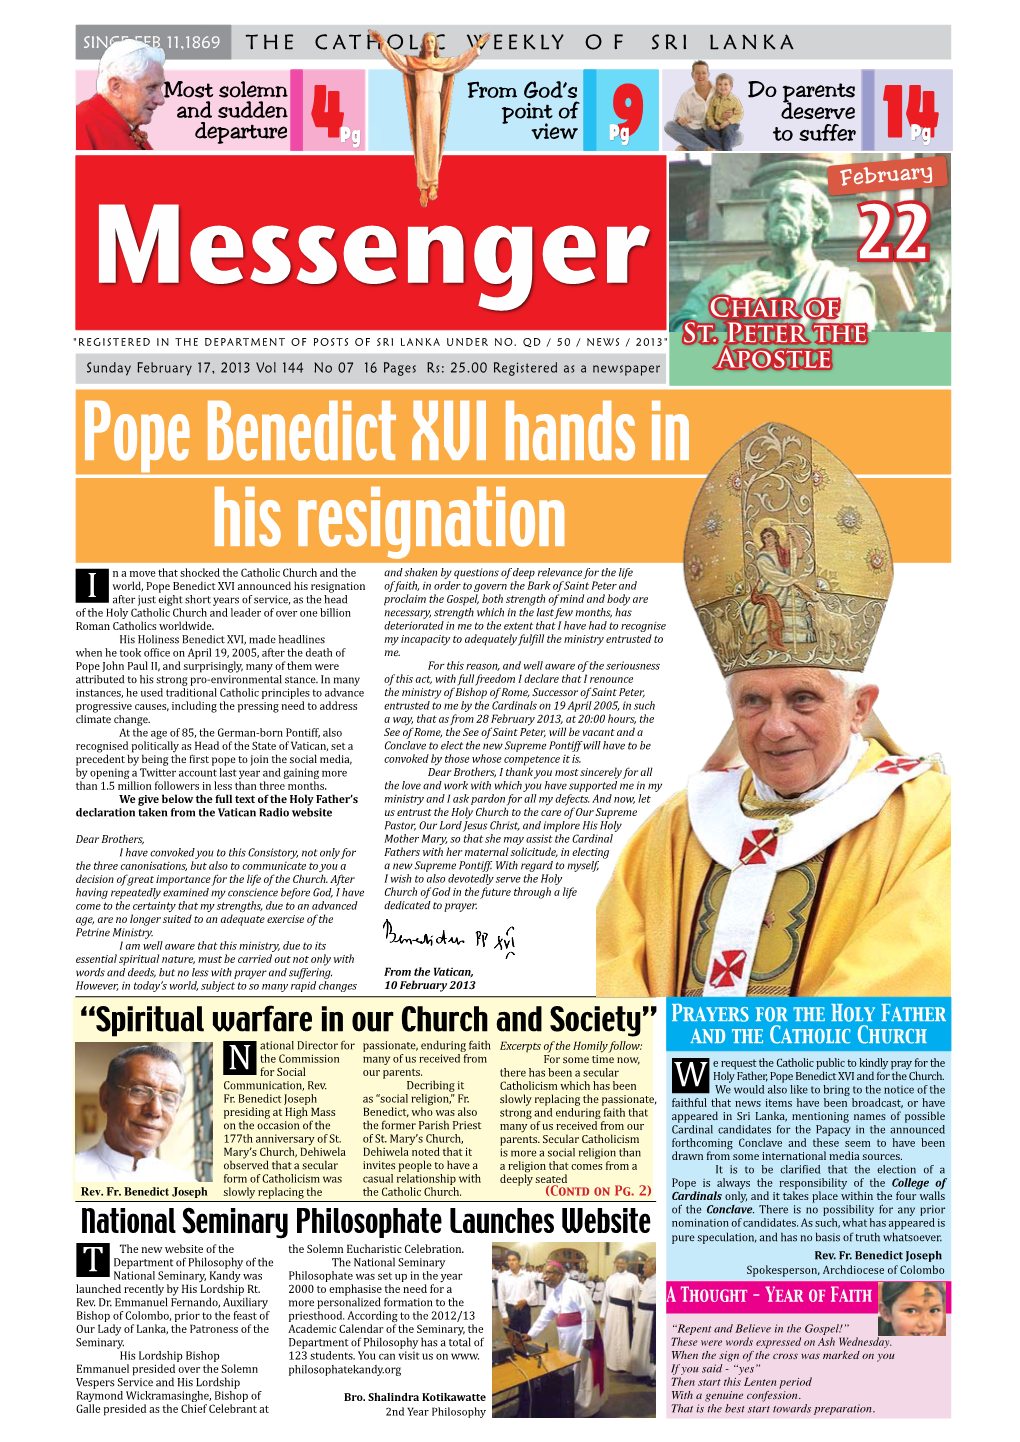 Pope Benedict XVI Hands in His Resignation